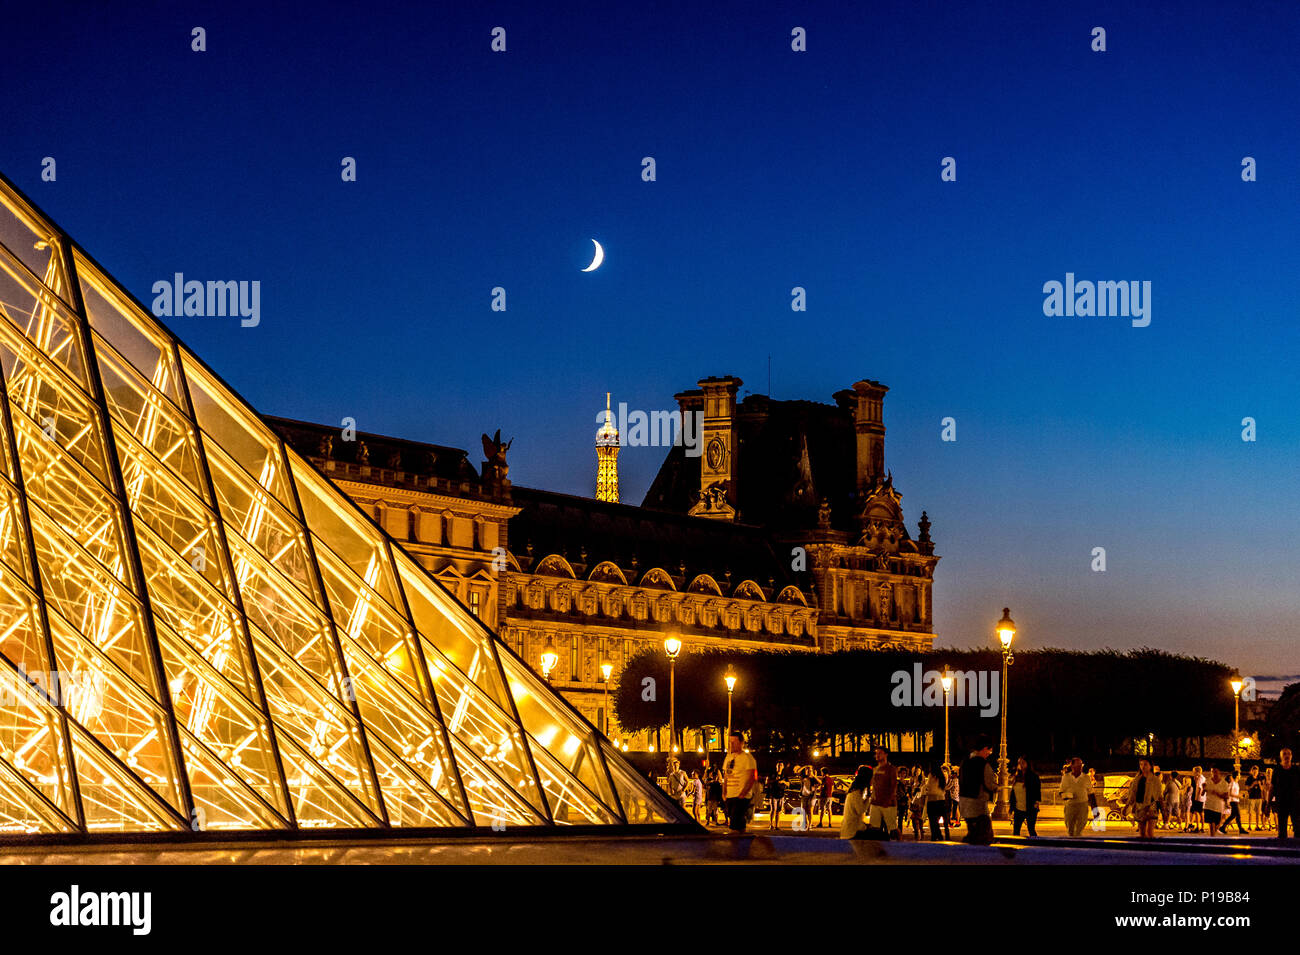 Le Louvre est illuminé et la Pyramide du Louvre est une attraction touristique de la nuit à Paris, en France Banque D'Images